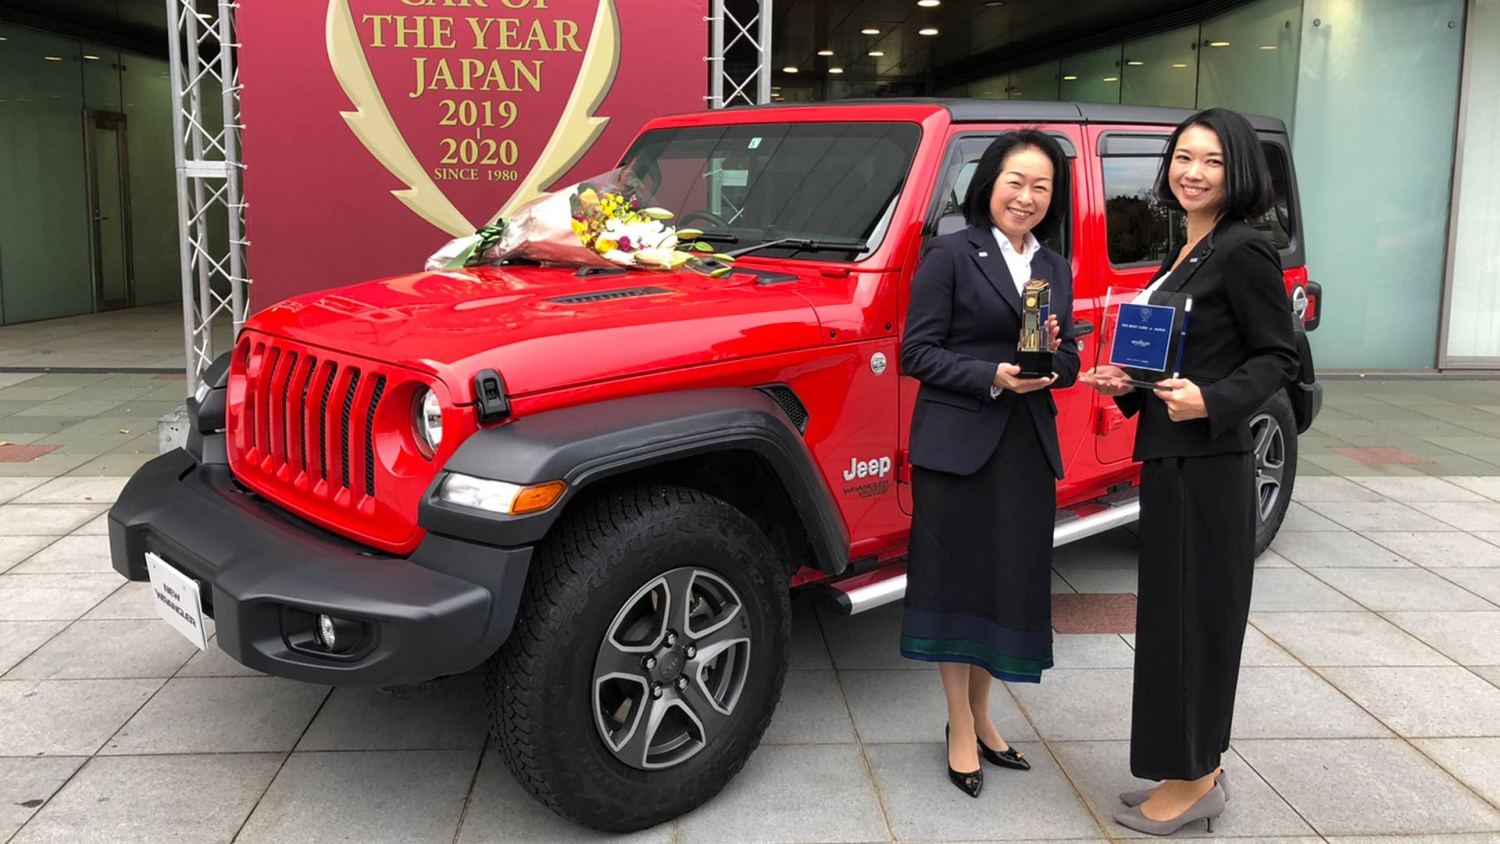 Toyota RAV4 giành giải "Xe của năm tại Nhật Bản 2019" - 2